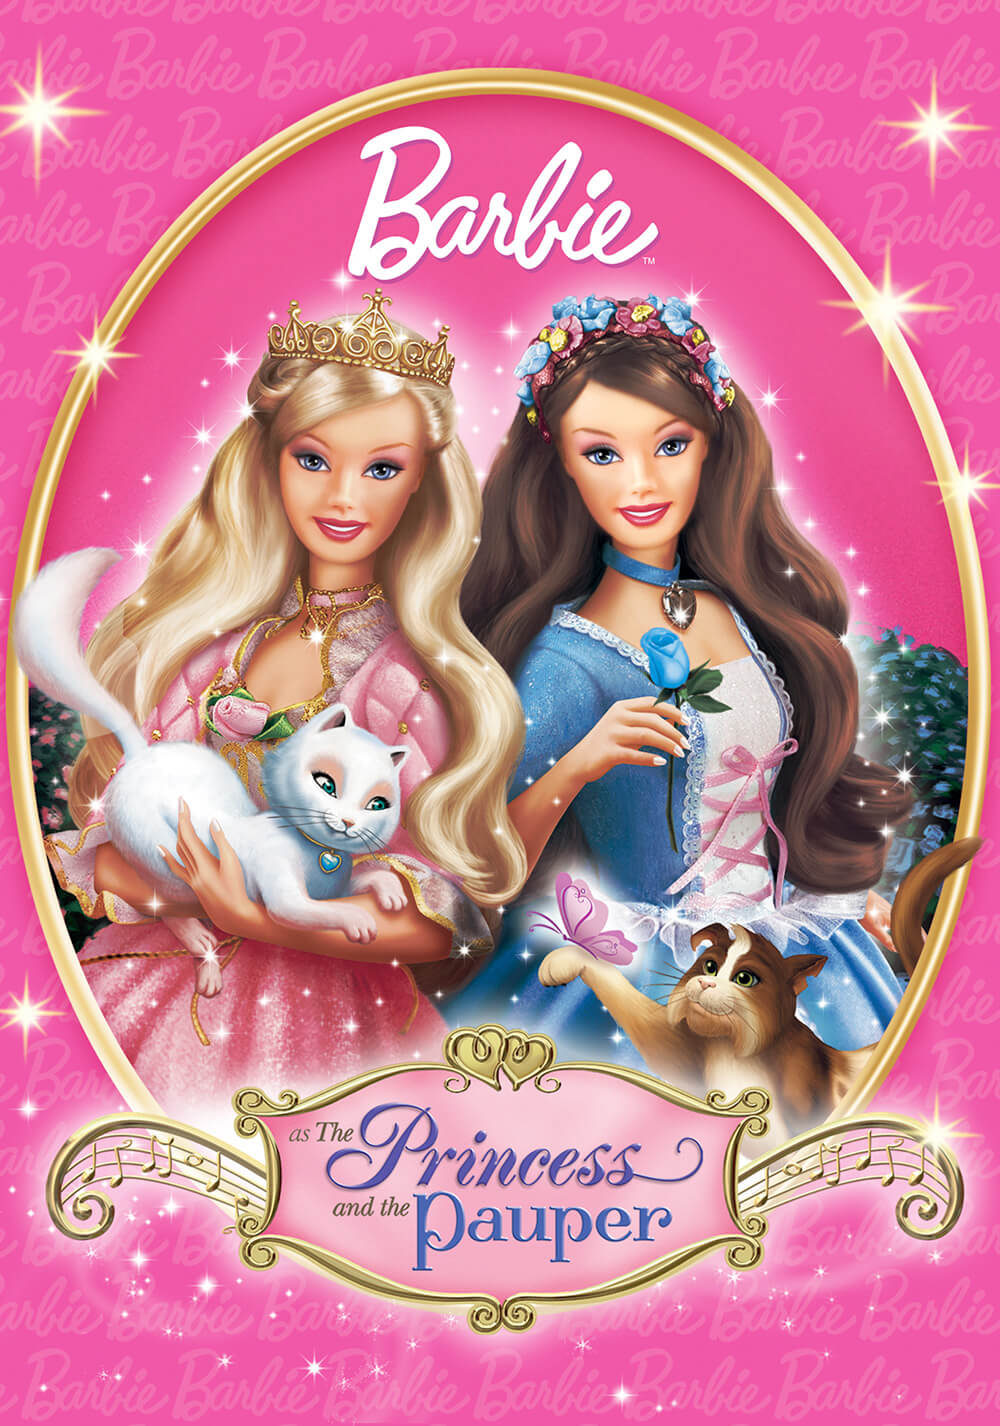 باربی در نقش شاهزاده و گدا (Barbie as The Princess and the Pauper)